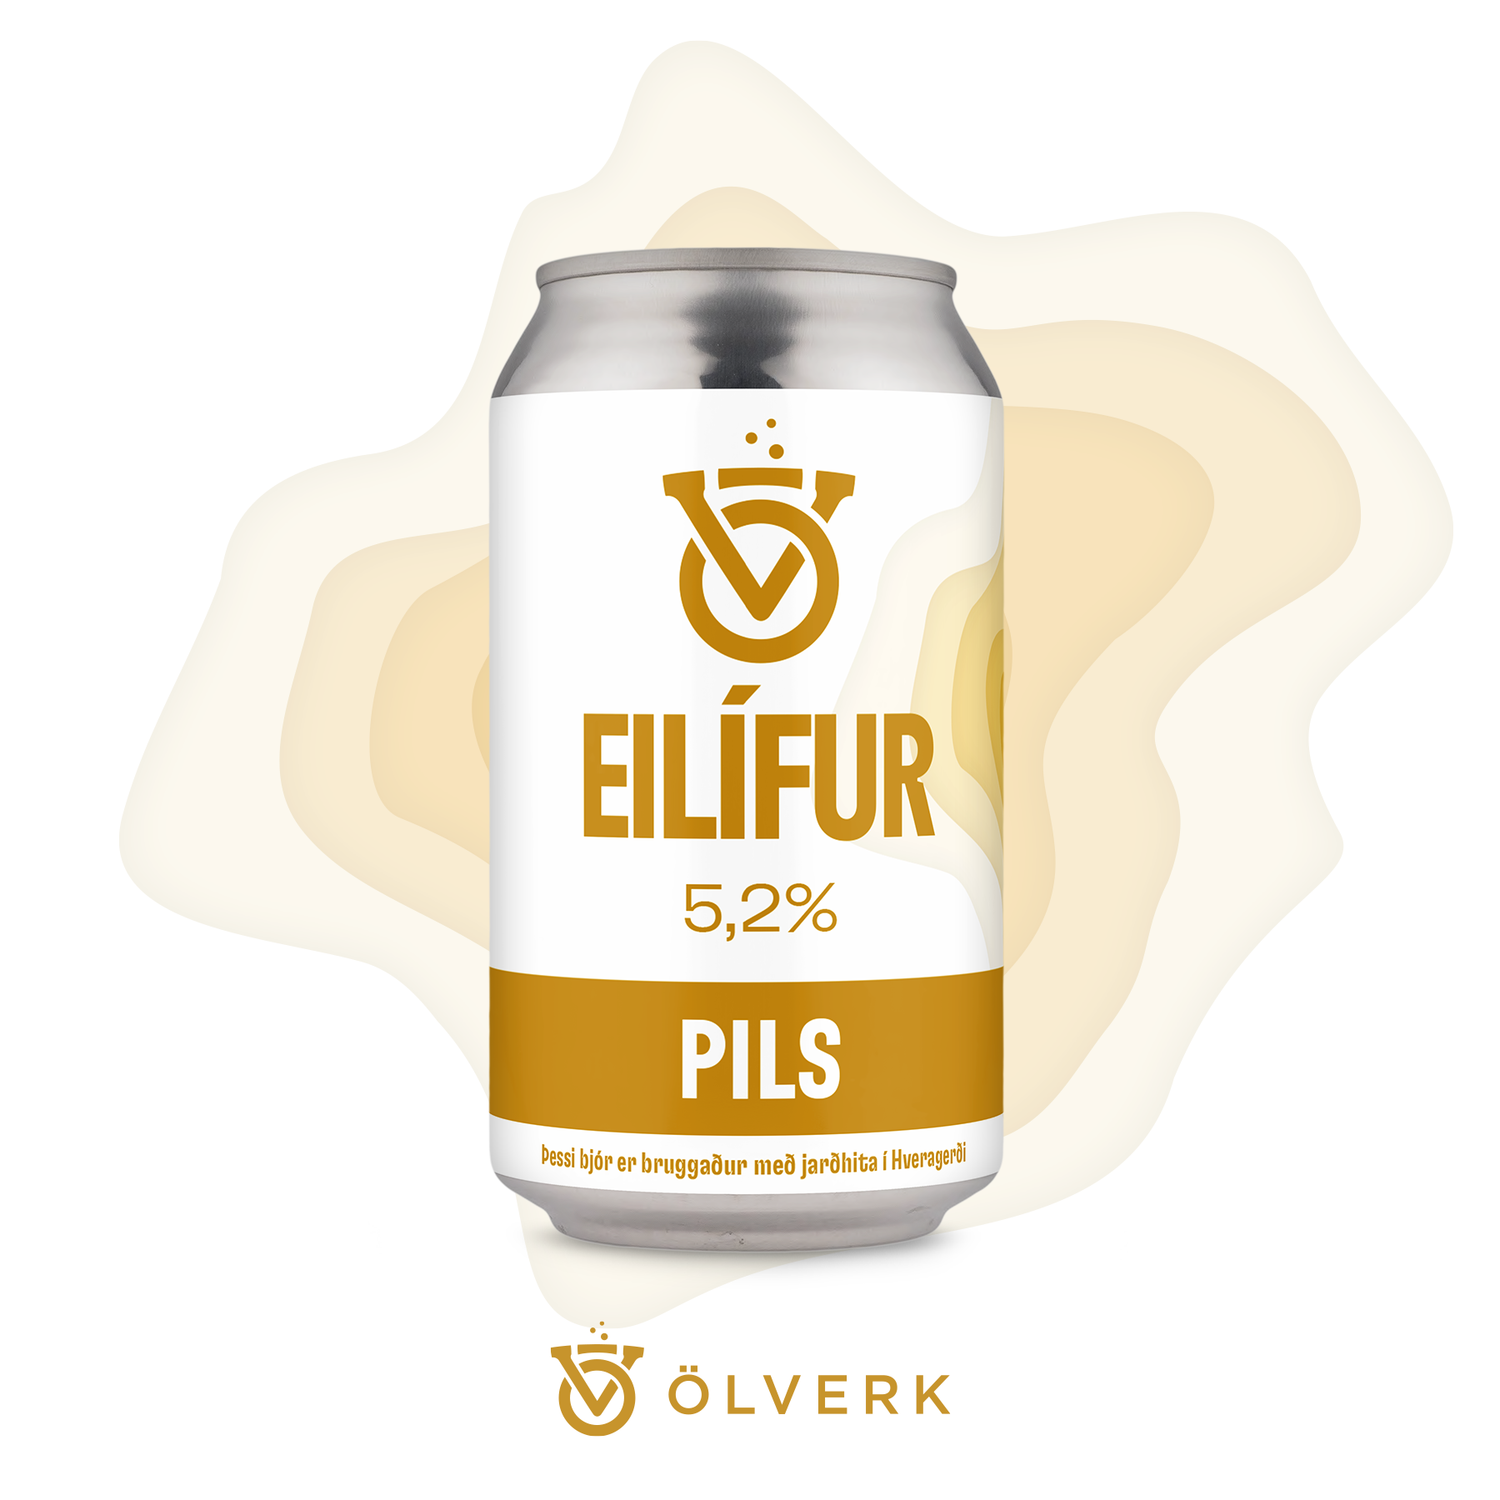 Craftbeer, Eilífur from Ölverk in Hveragerði Iceland. German Pils beer.  